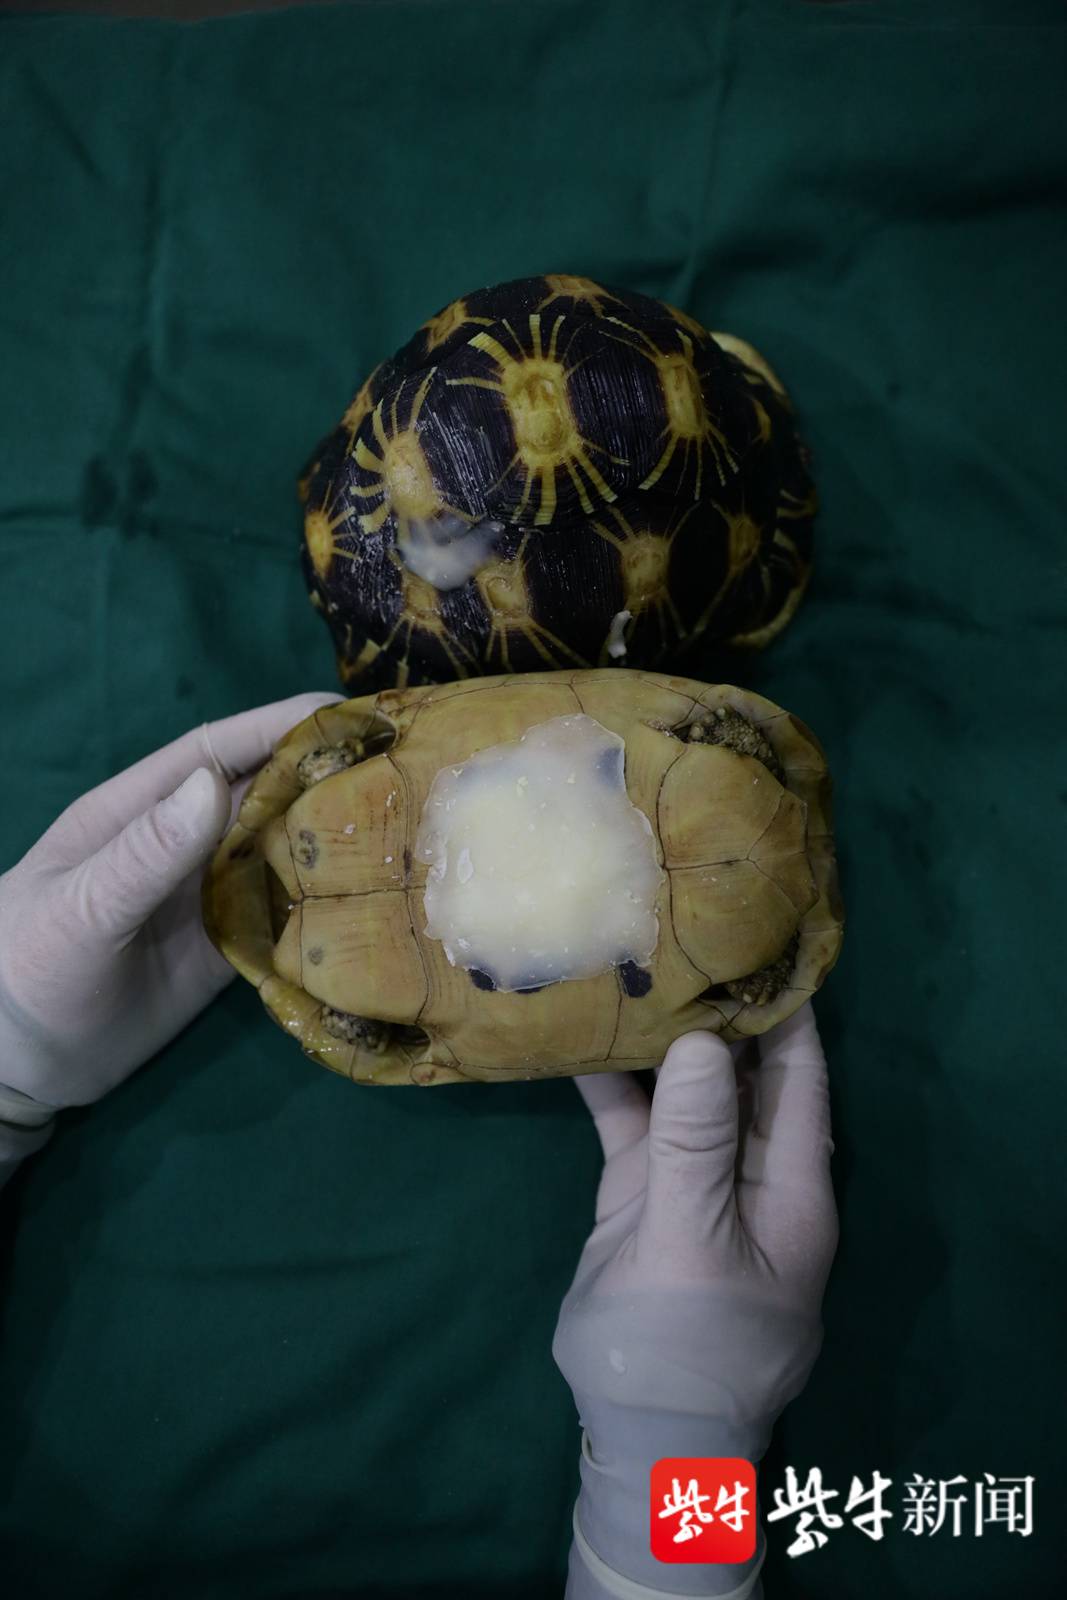 【视频】国家一级保护动物缅甸陆龟的"房子"破了 兽医妙手帮它"安居